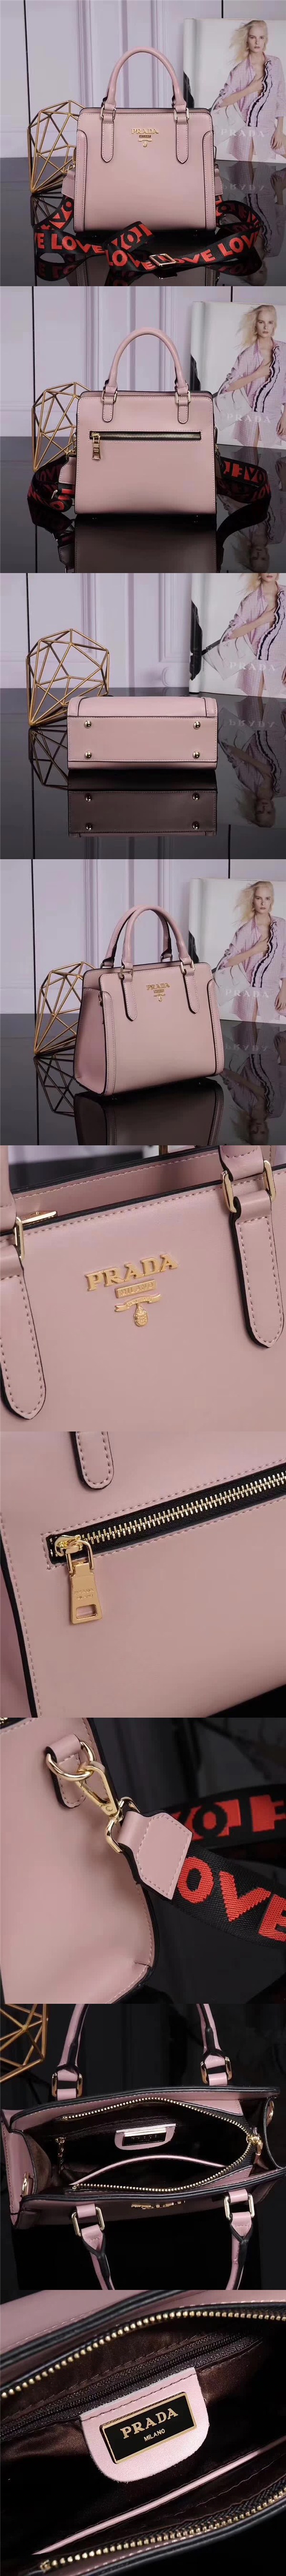 2018春季注目度NO.1PRADA☆プラダ新品8077 女性ハンドバッグ数量限定発表!プラダバッグコピー